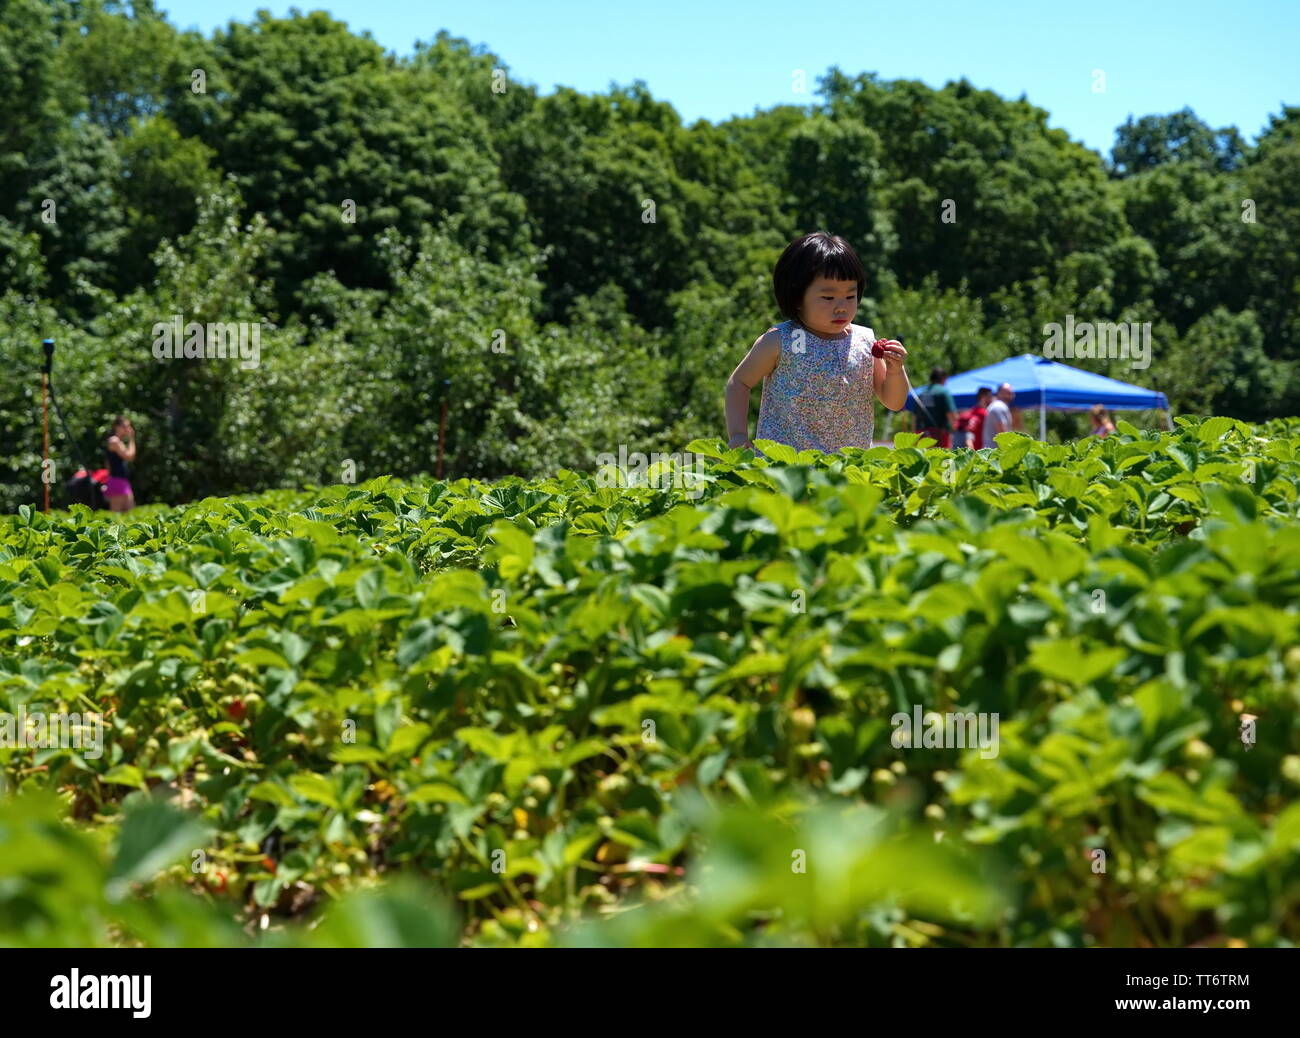 Middlefield, CT USA. Jun 2019. Junge Asiatische amerikanische Kid, dass dieser große saftige Erdbeere für eine schnelle Süße beißen bereit ist. Stockfoto